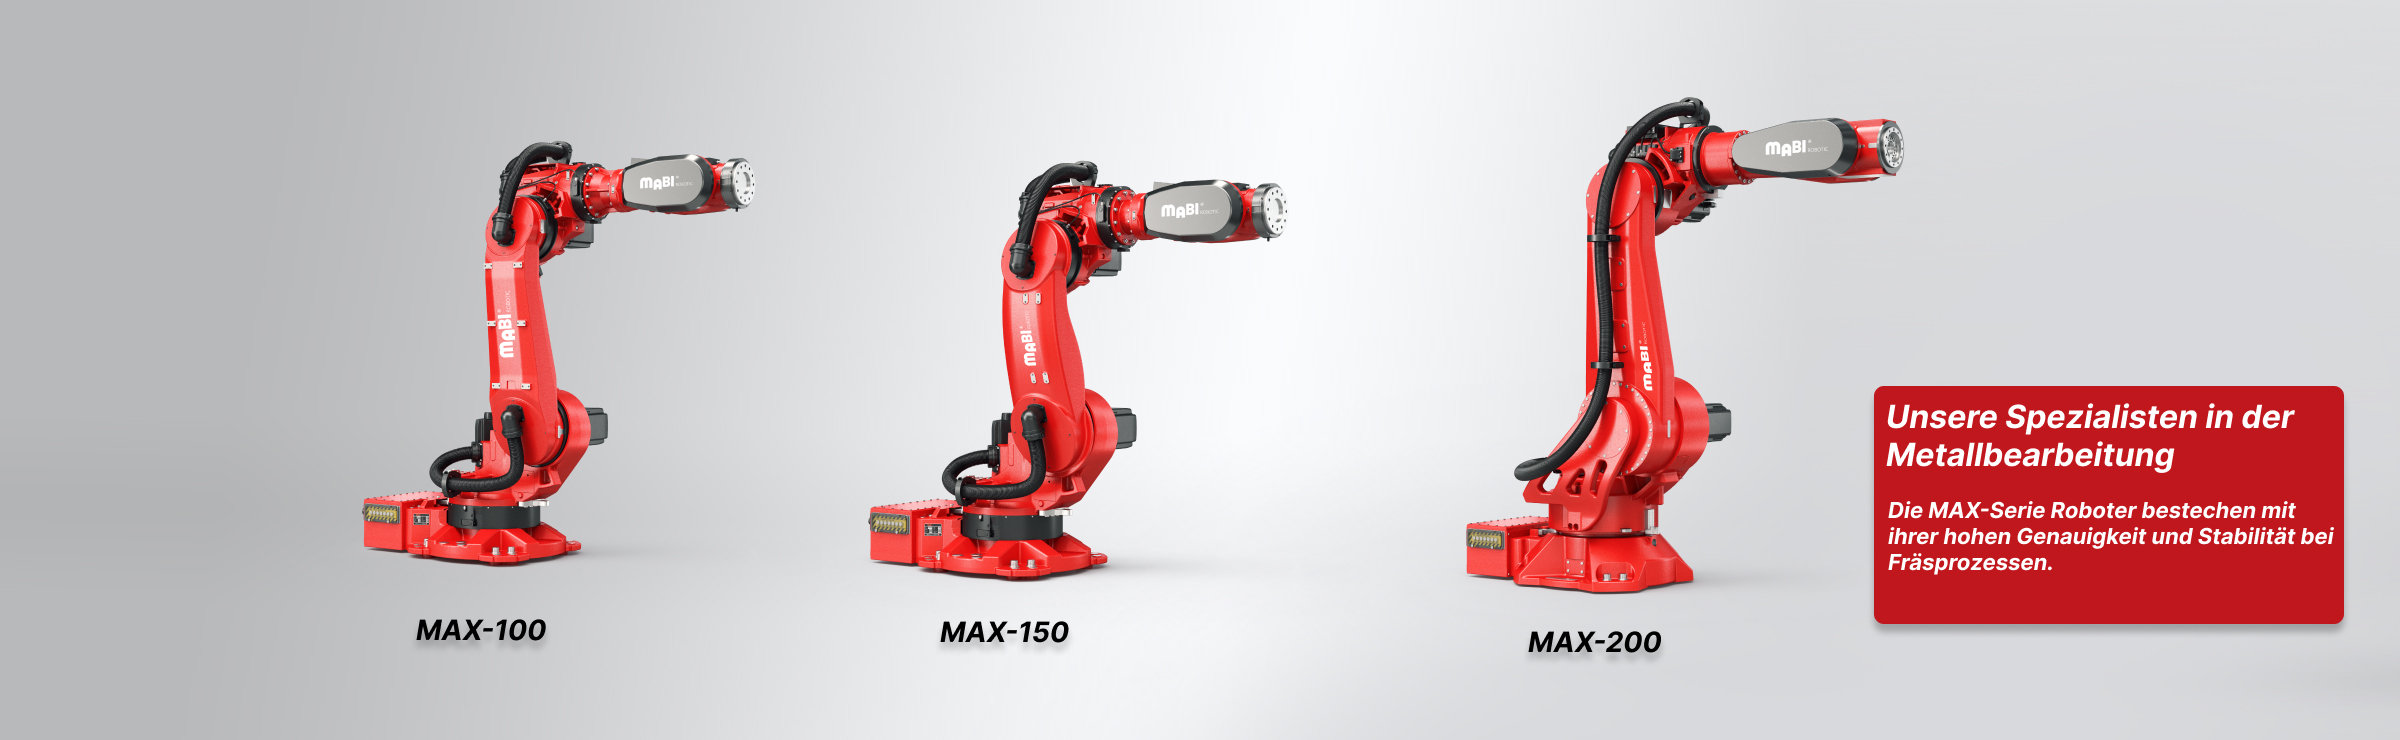 MAX-100 | MAX-150 | MAX-200 von MABI Robotic